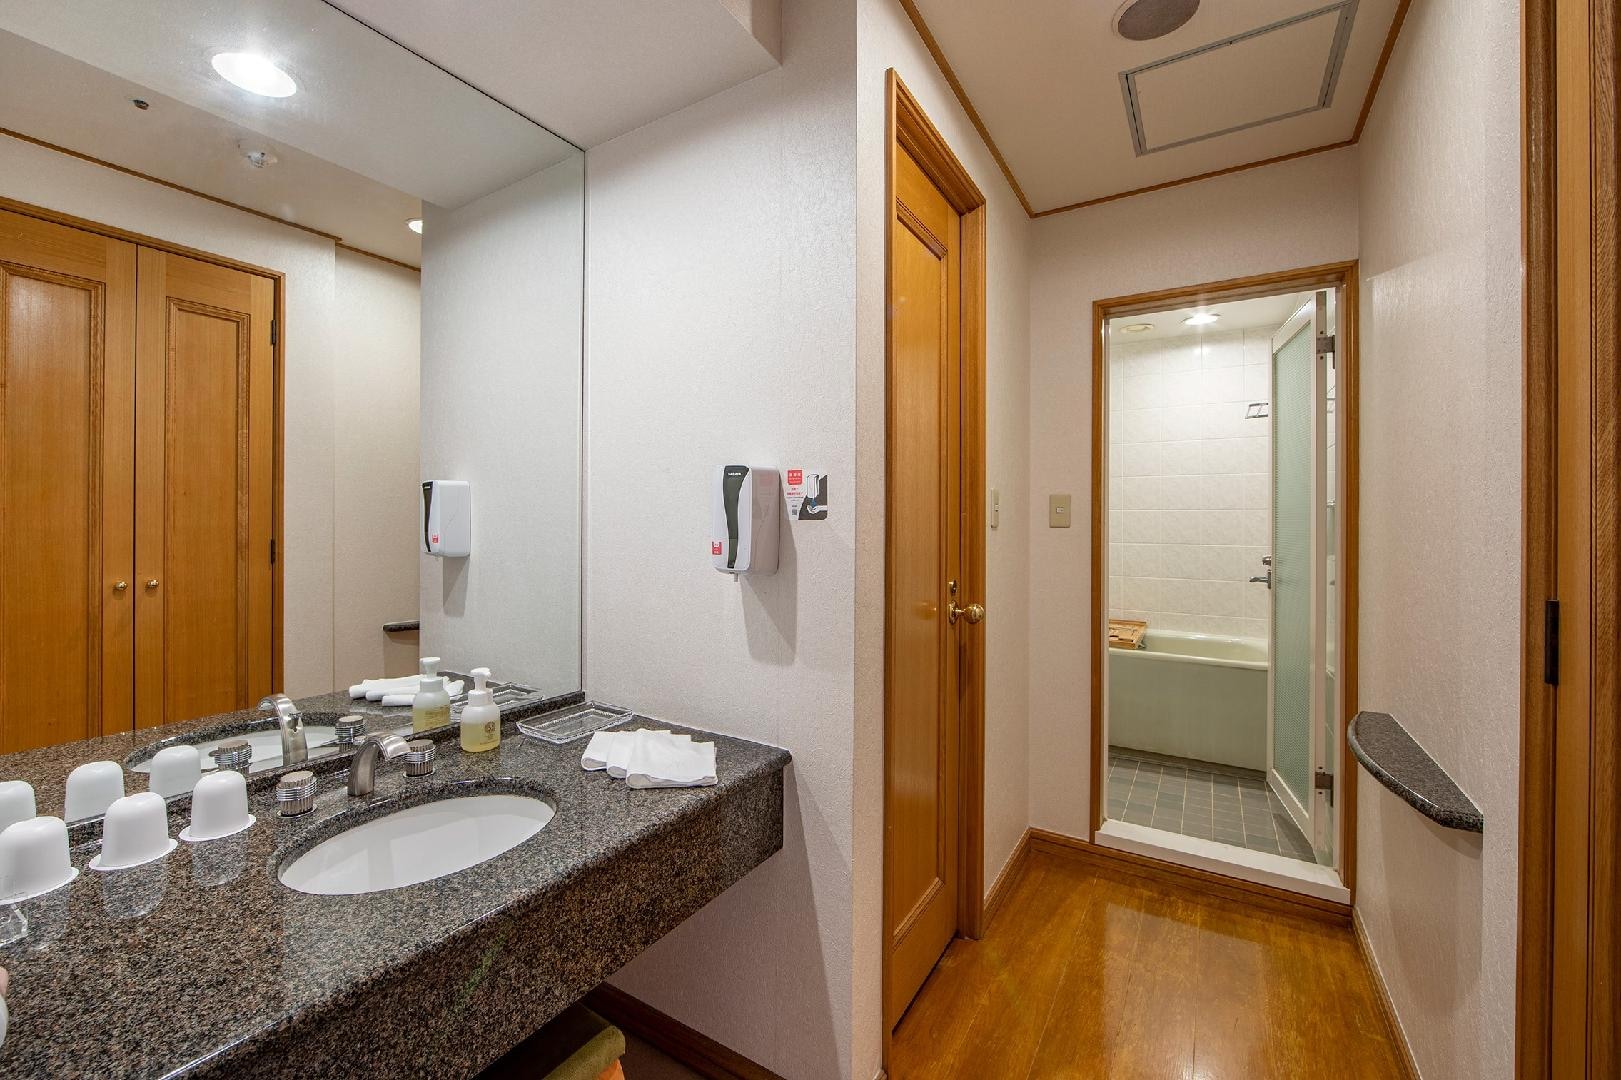 ห้องน้ำห้องญี่ปุ่นผสมตะวันตก